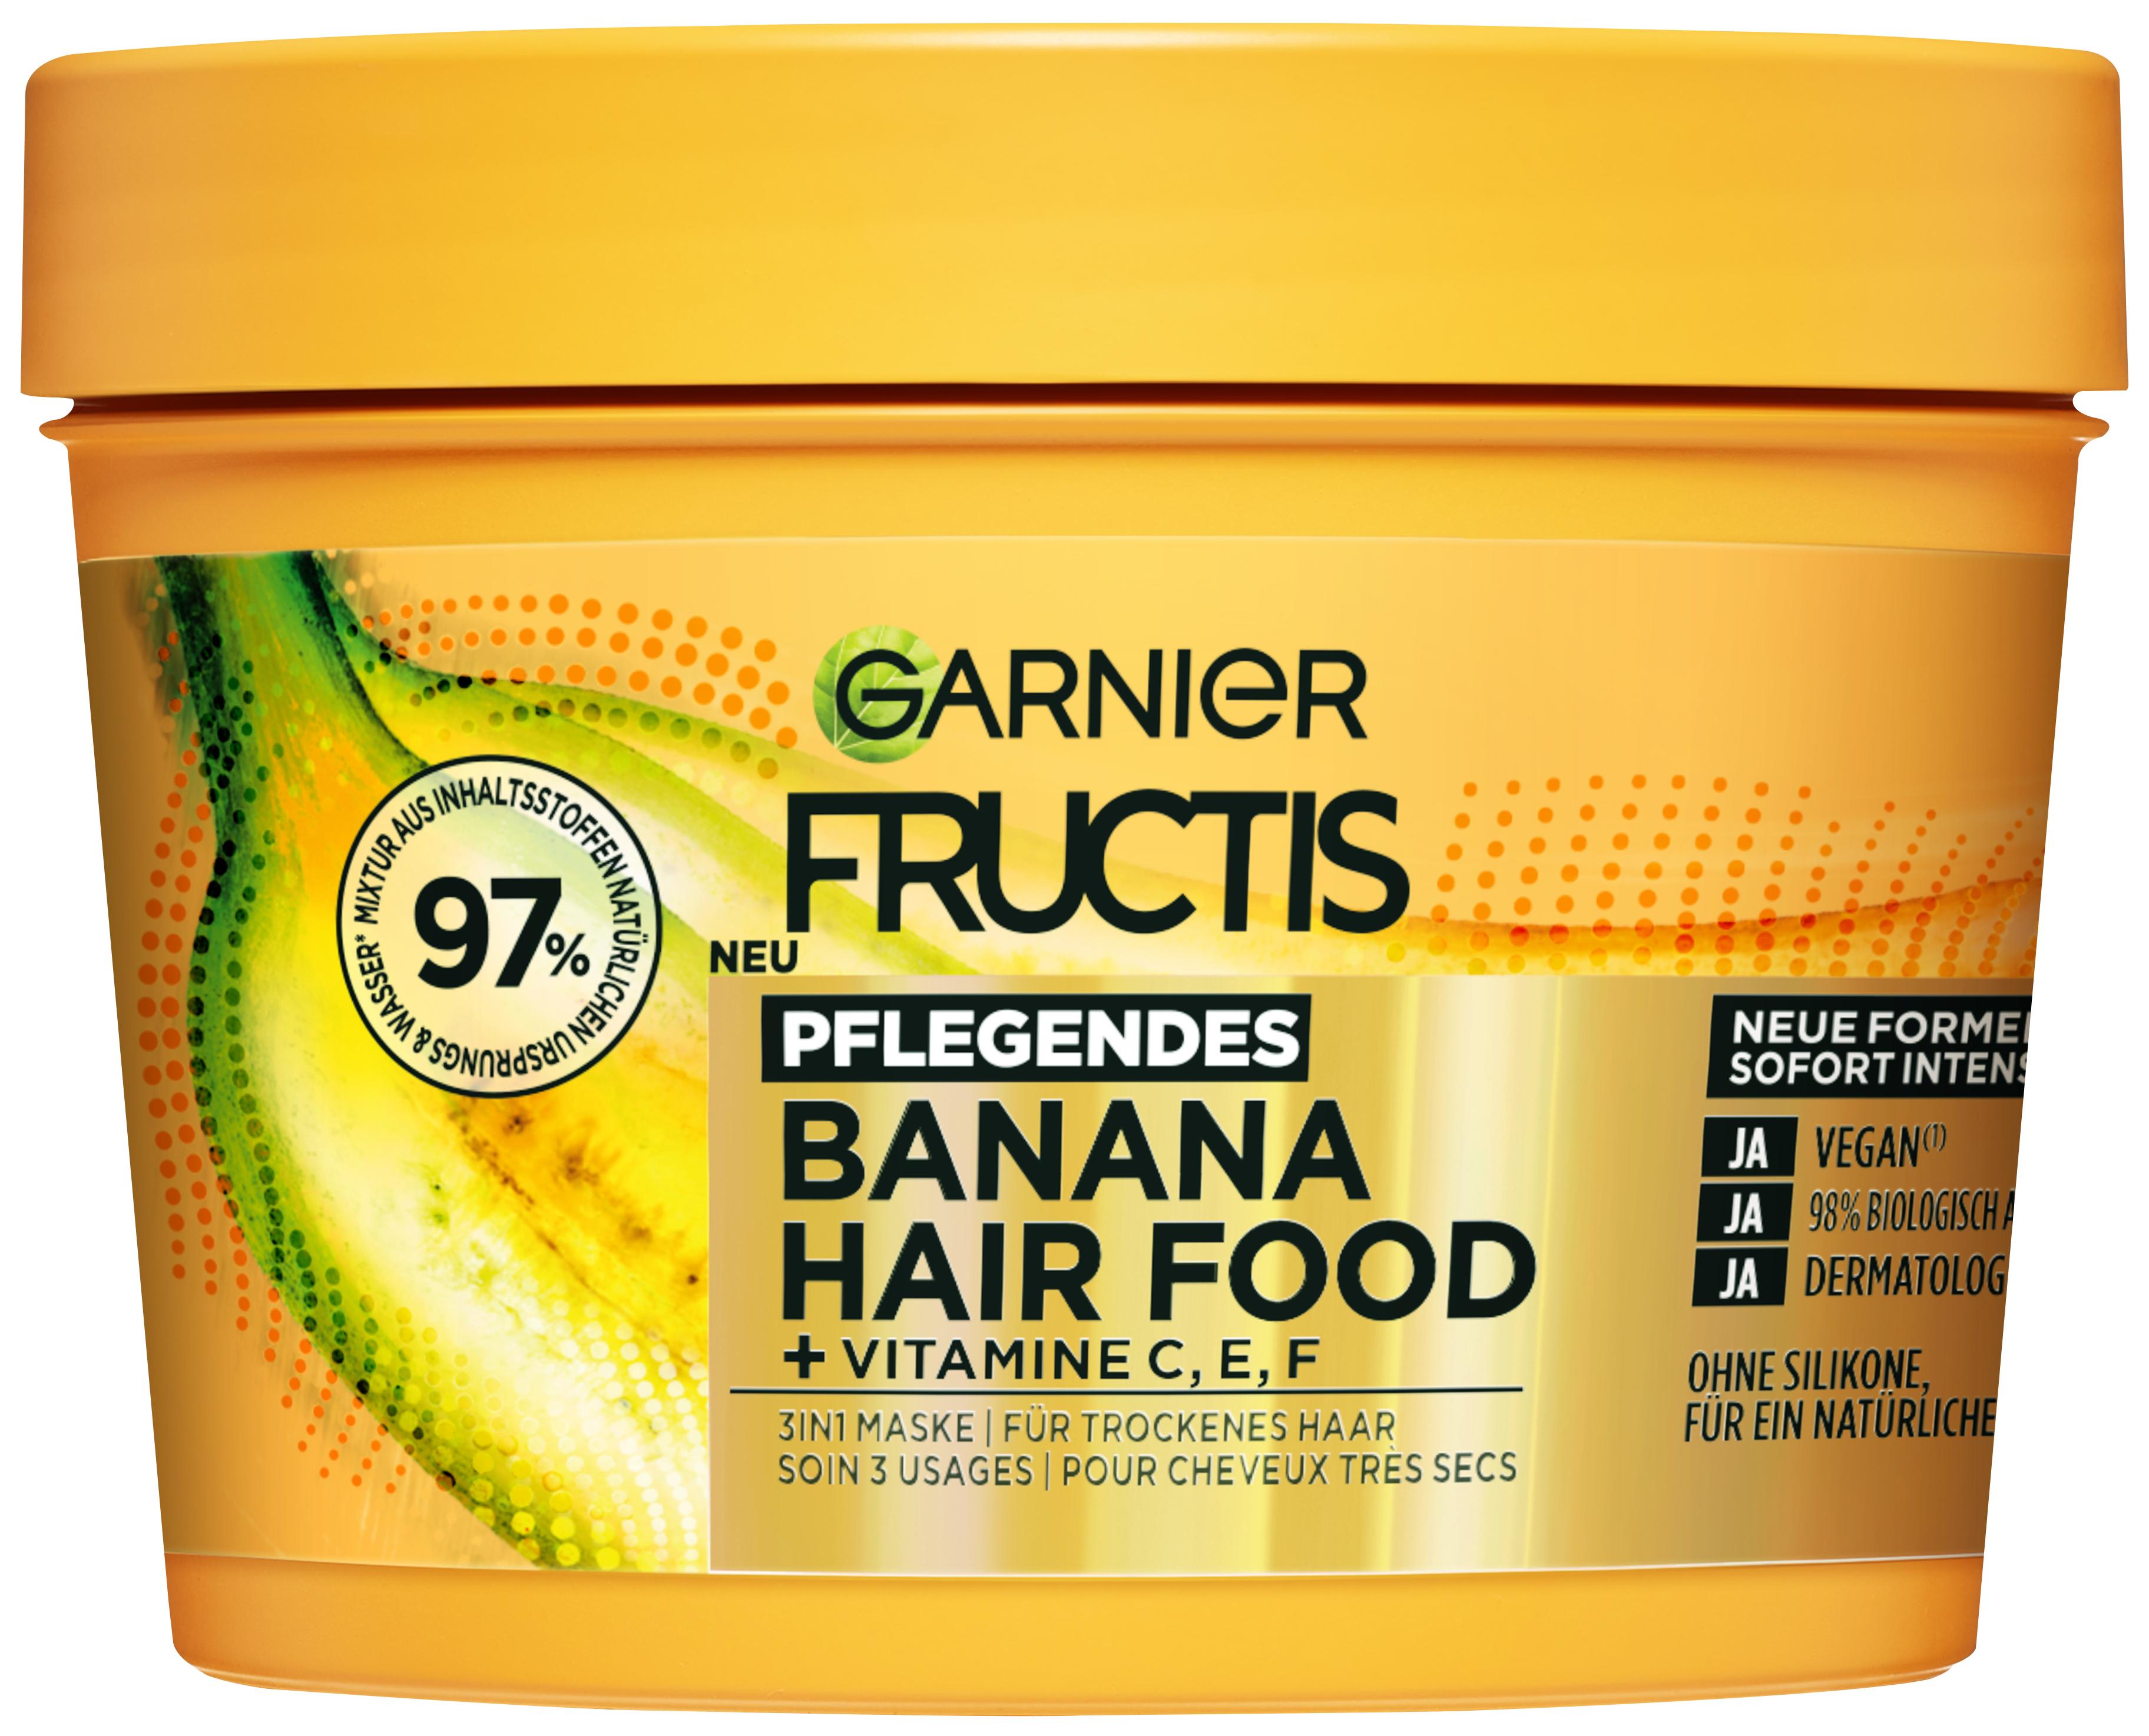 Fructis - Pflegendes Banana Hair Food 3in1 Maske für trockenes Haar